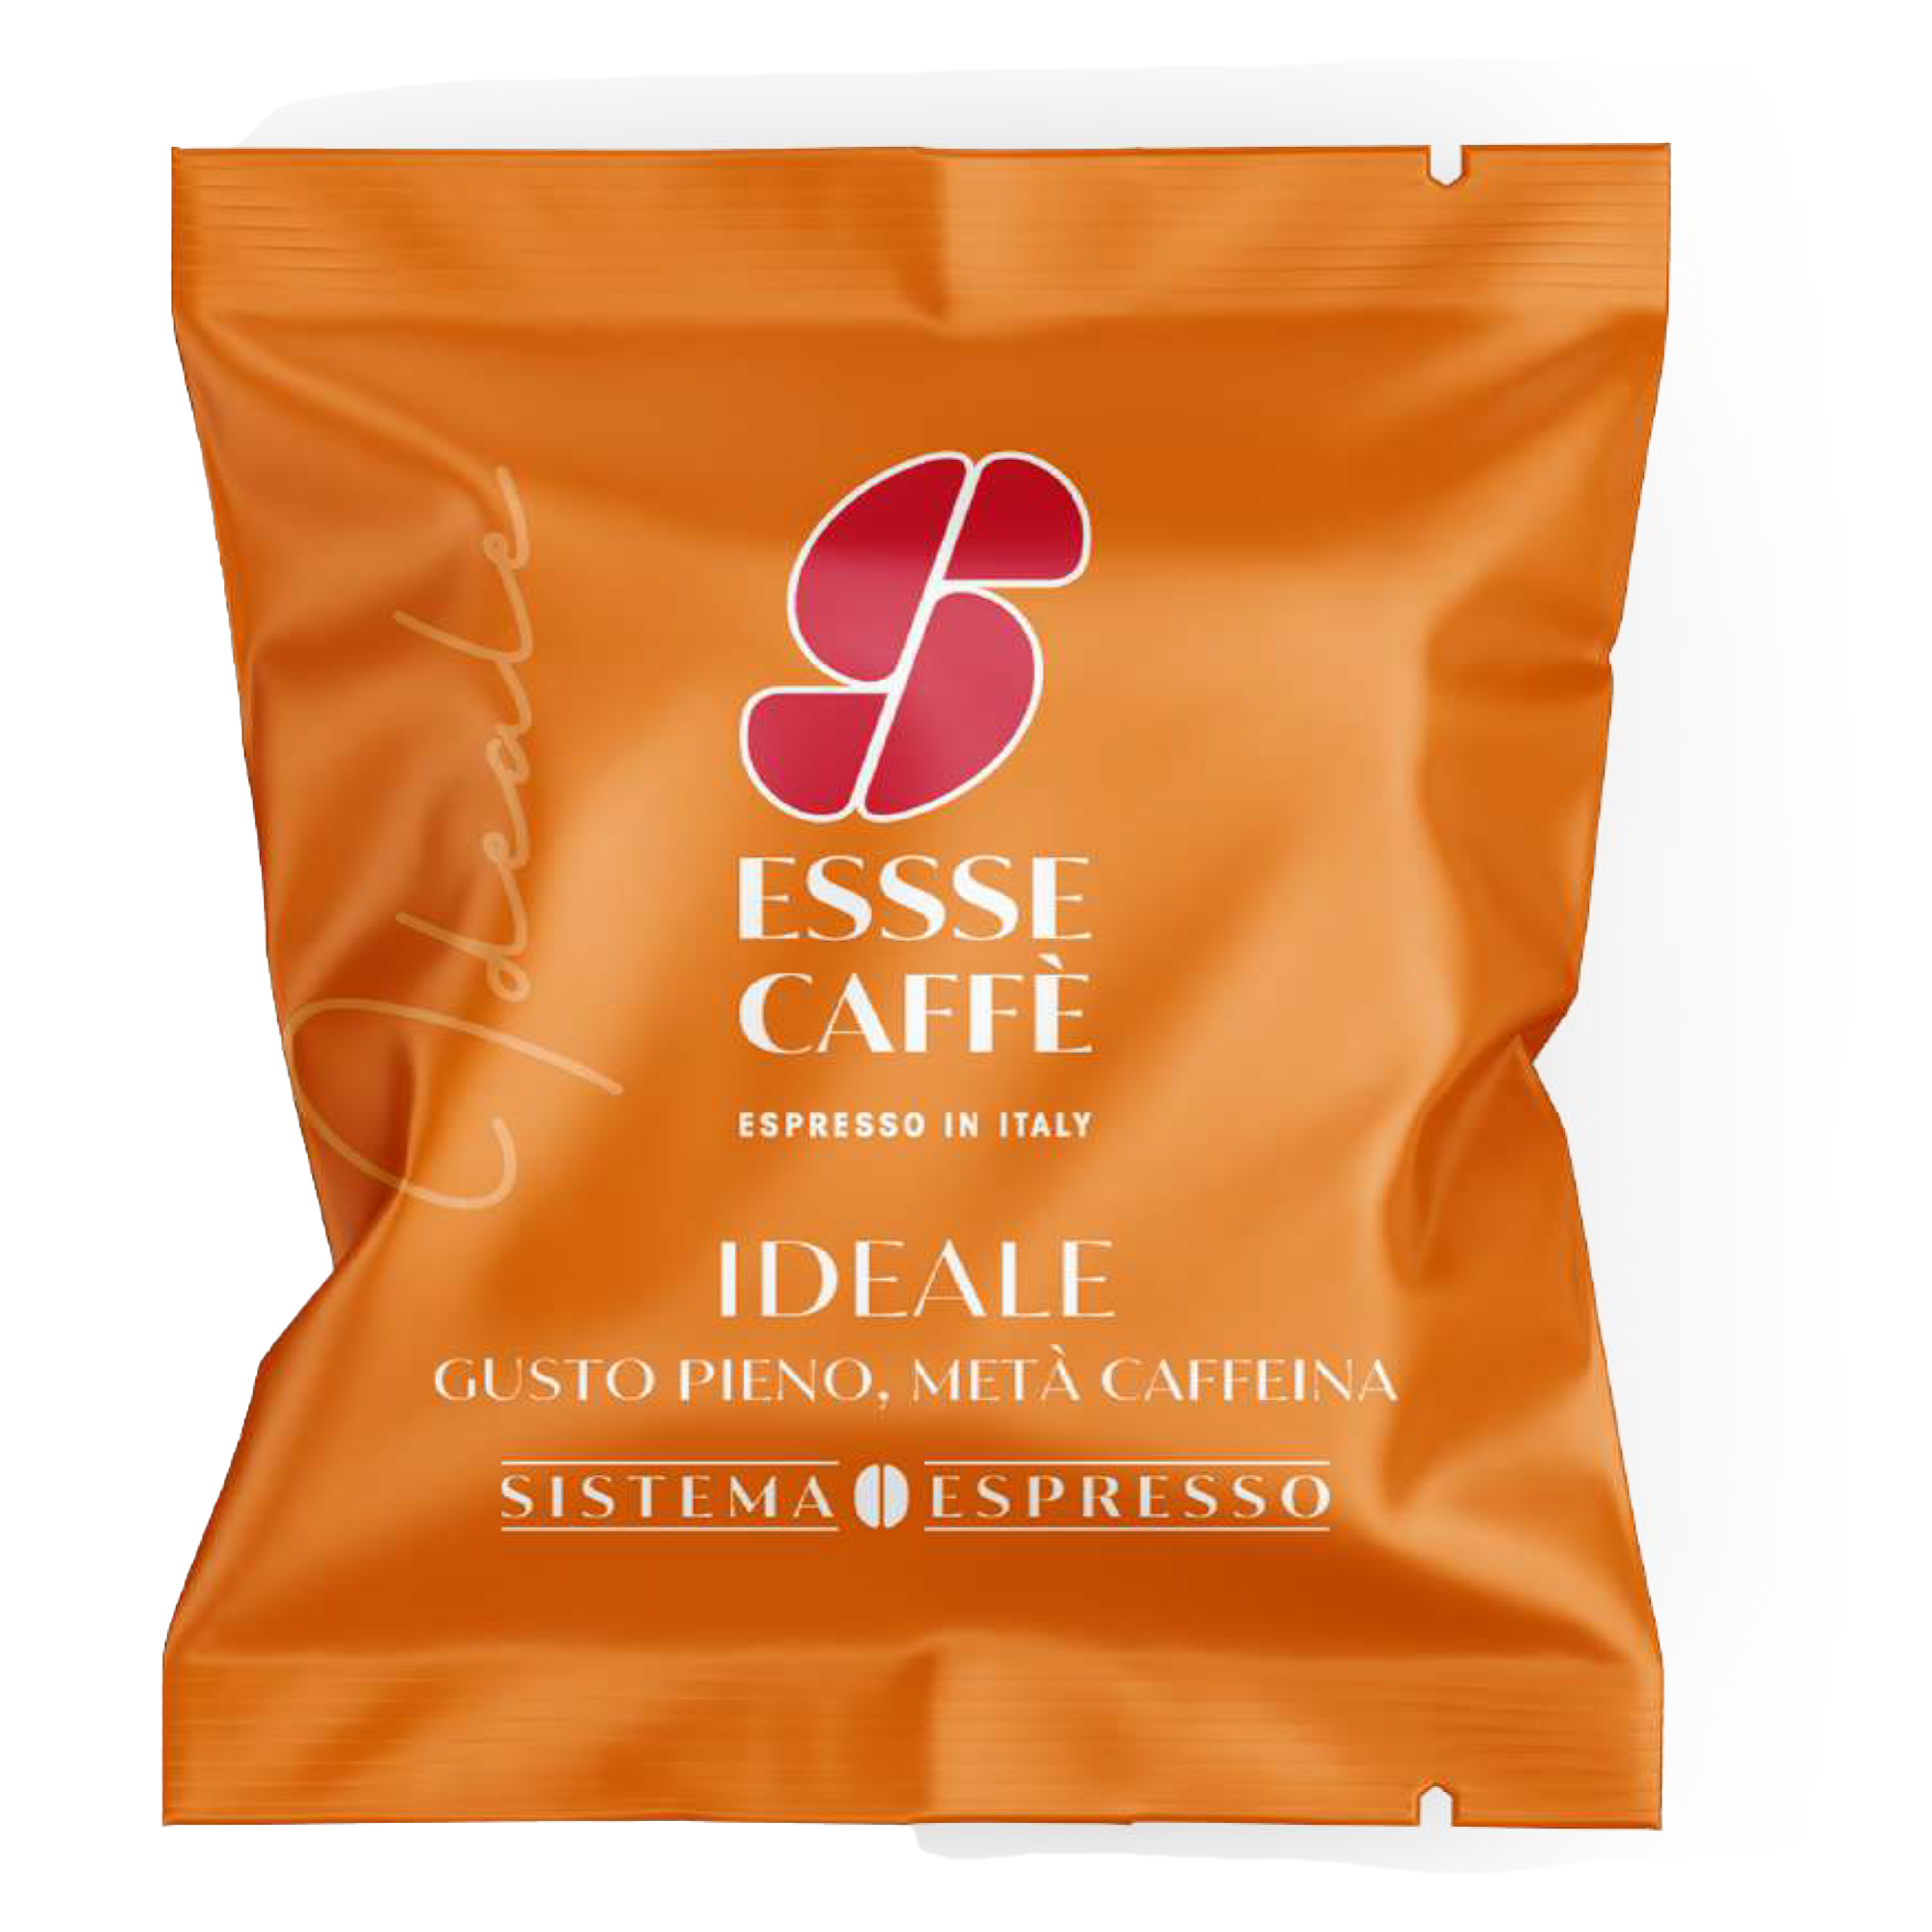 Set degustazione in capsule assortite - caffE' / bevande - Essse CaffE' - conf. 18 pezzi